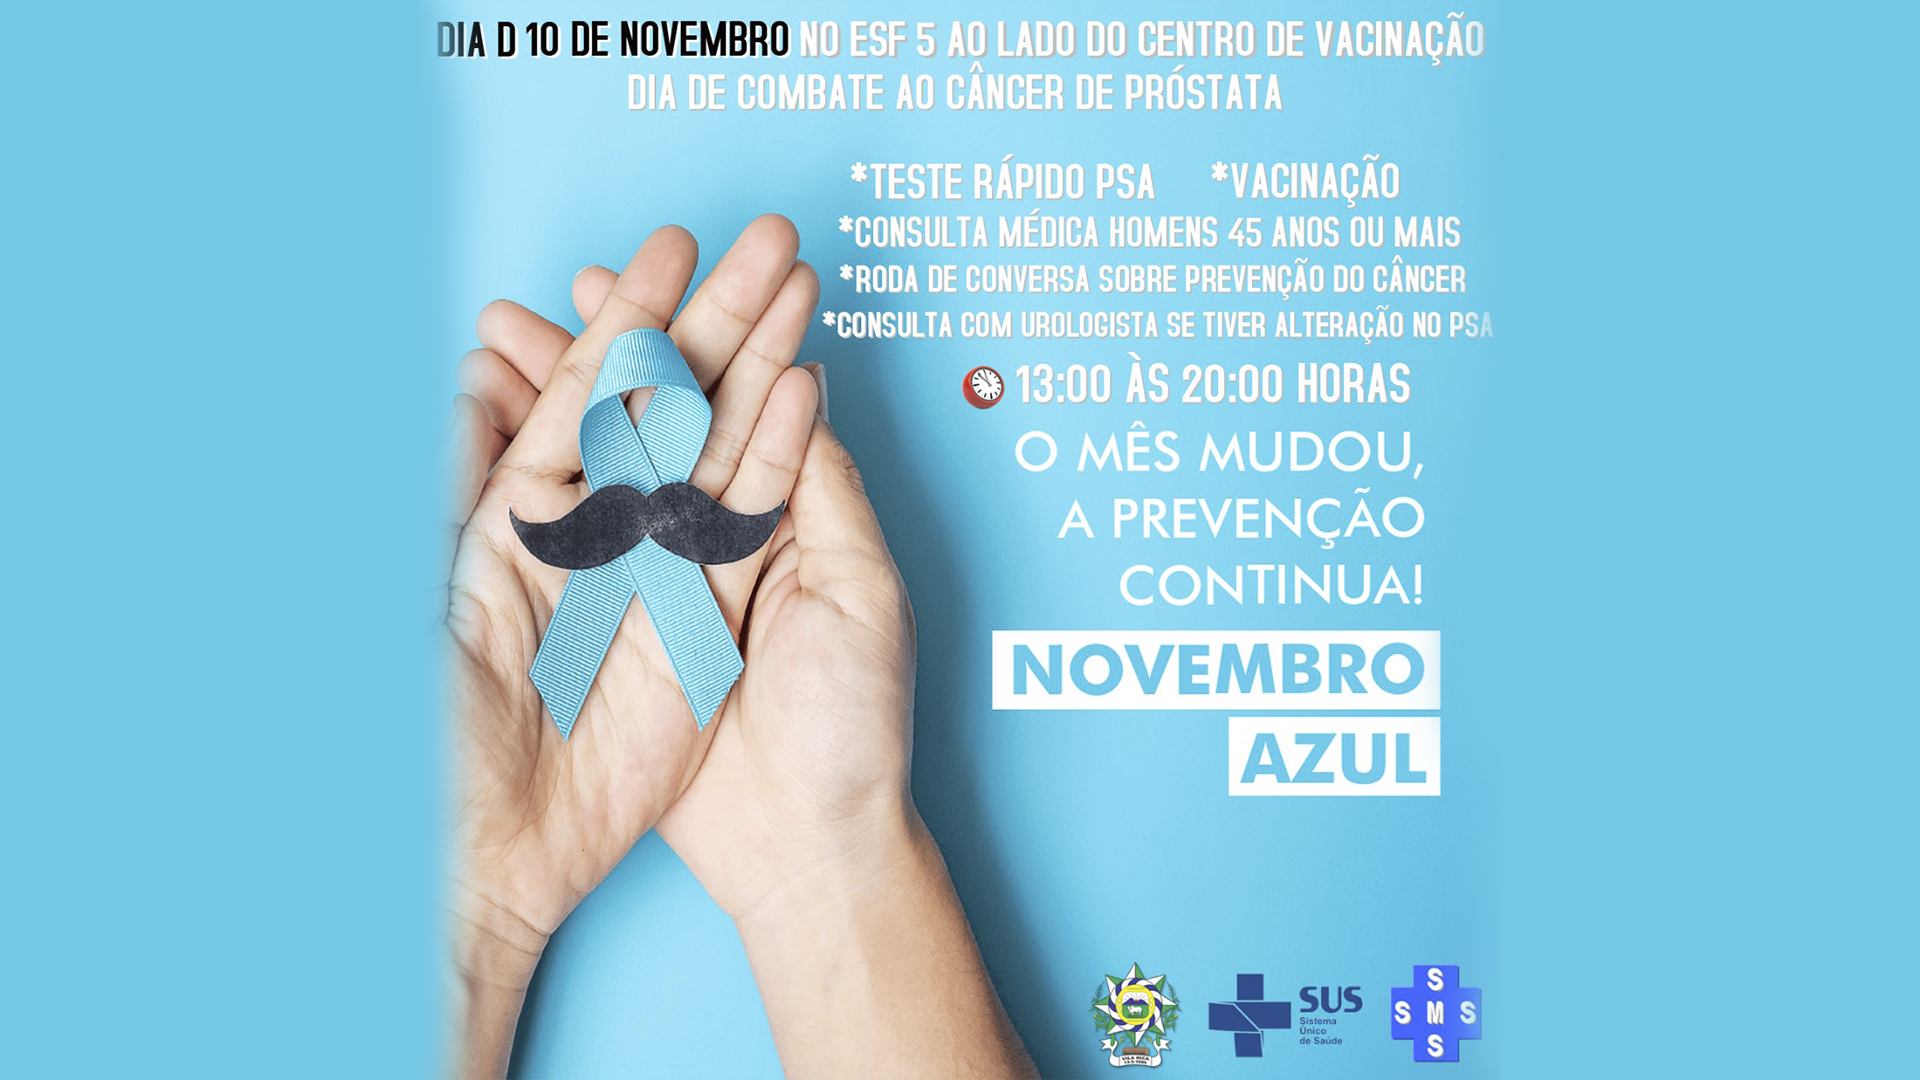 Acontece na próxima quinta-feira, 10 de novembro, o Dia D de combate ao câncer de próstata em Vila Rica